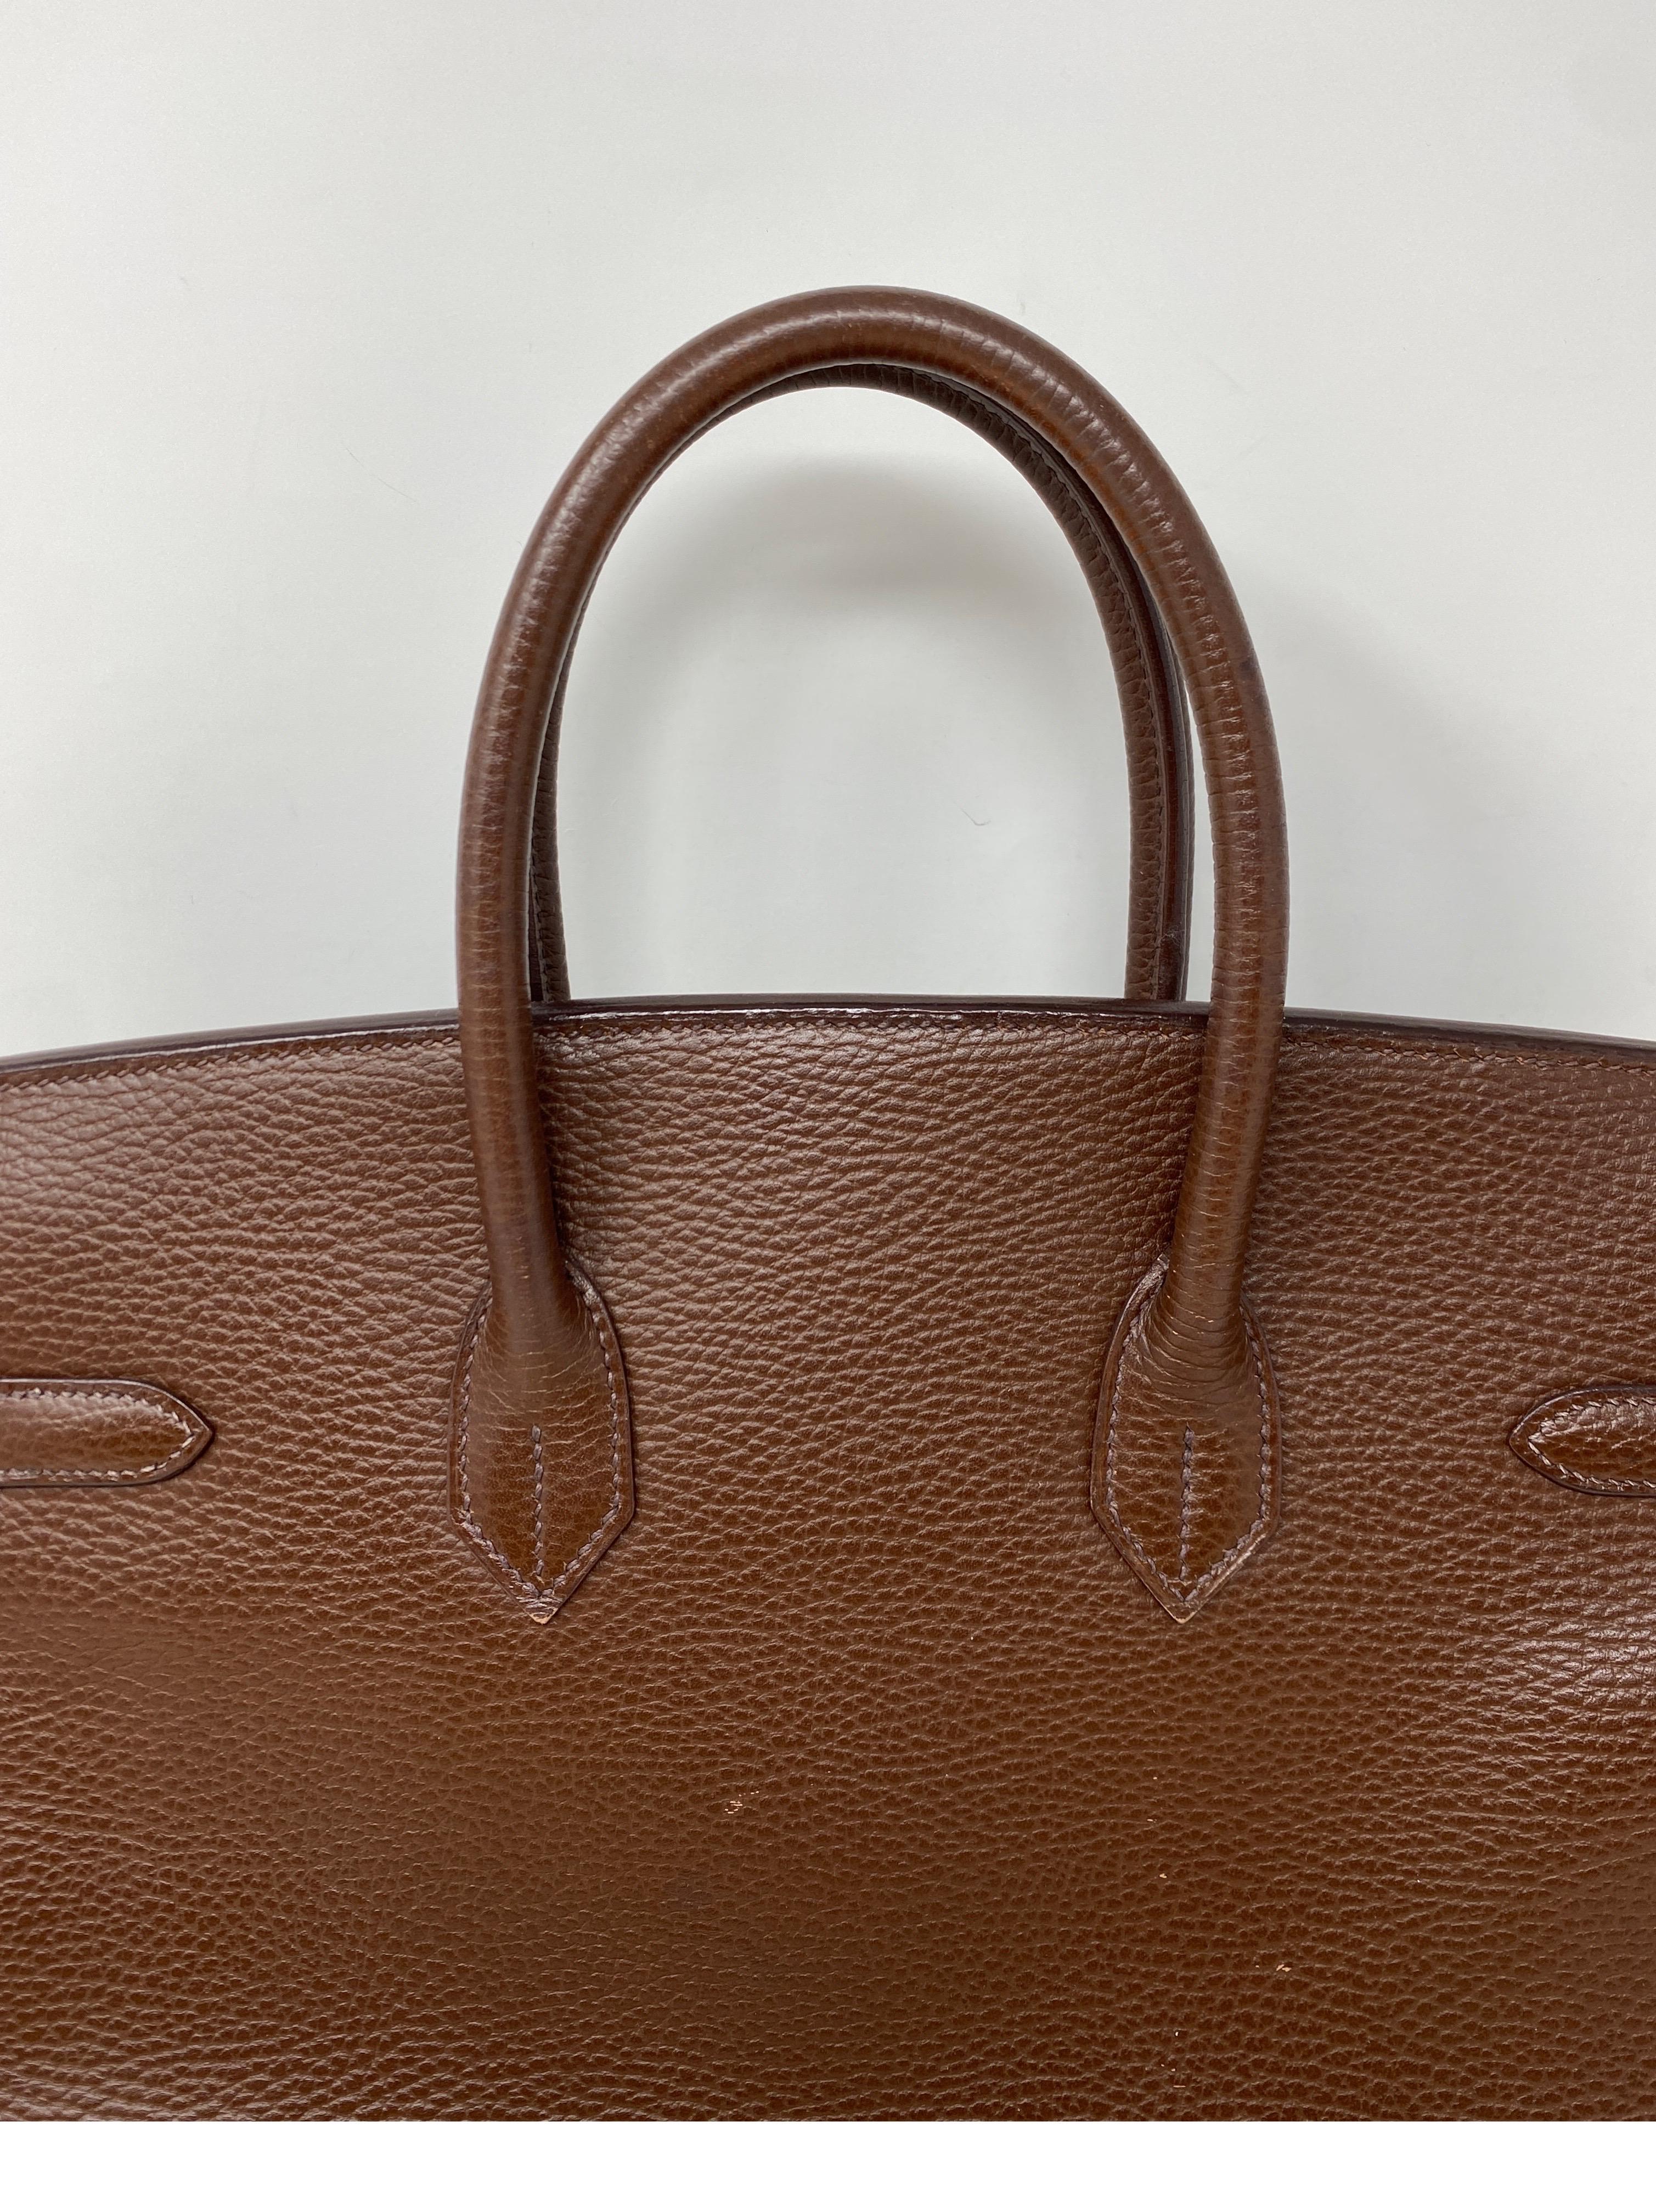 Women's or Men's Hermes Brown Birkin 35 Bag